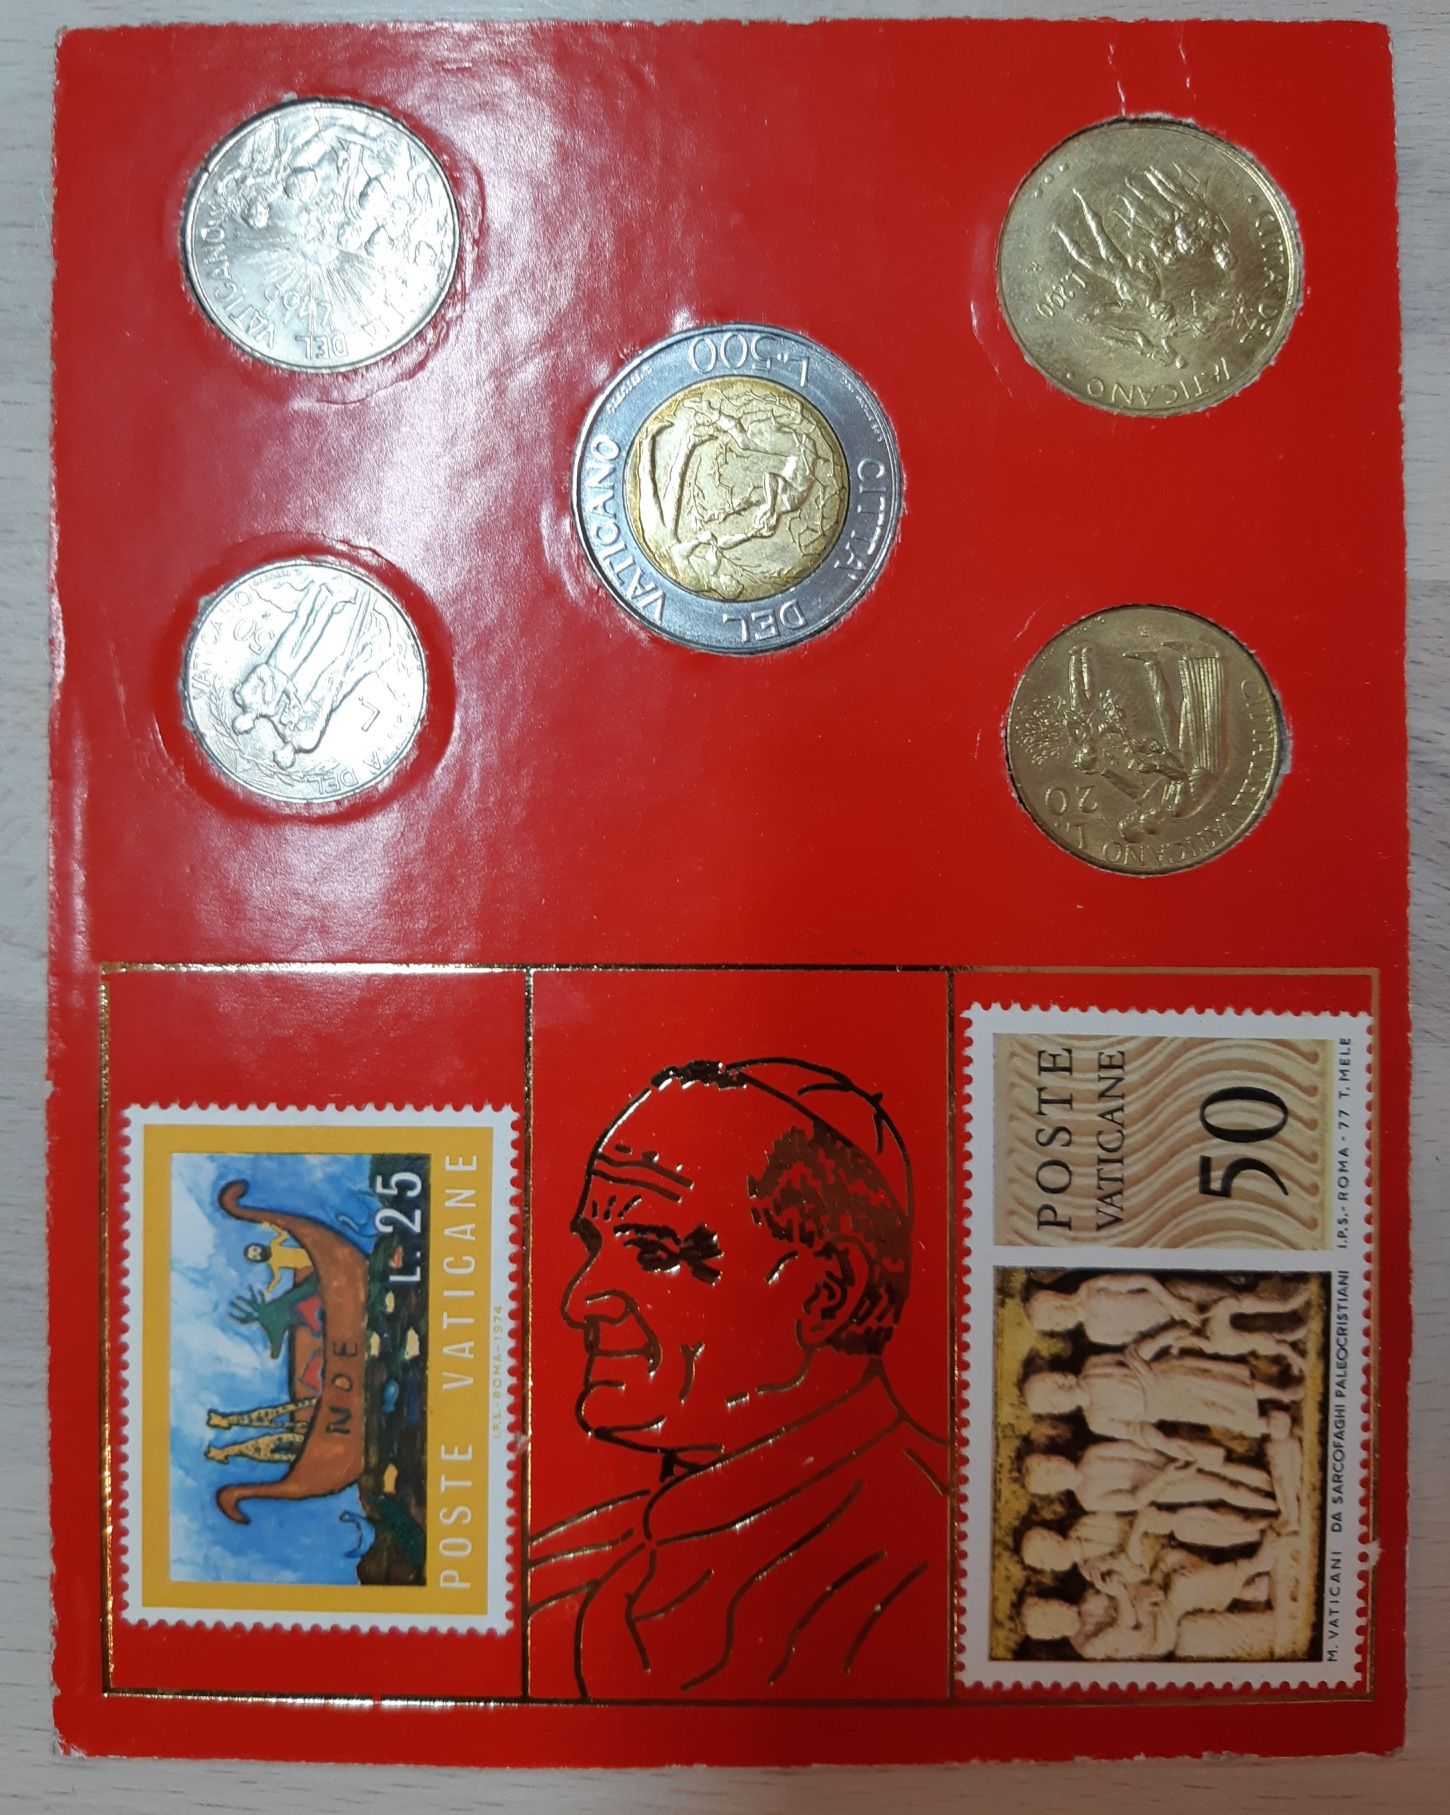 Jan Paweł II JPII 2000 iubilaeum monety znaczki